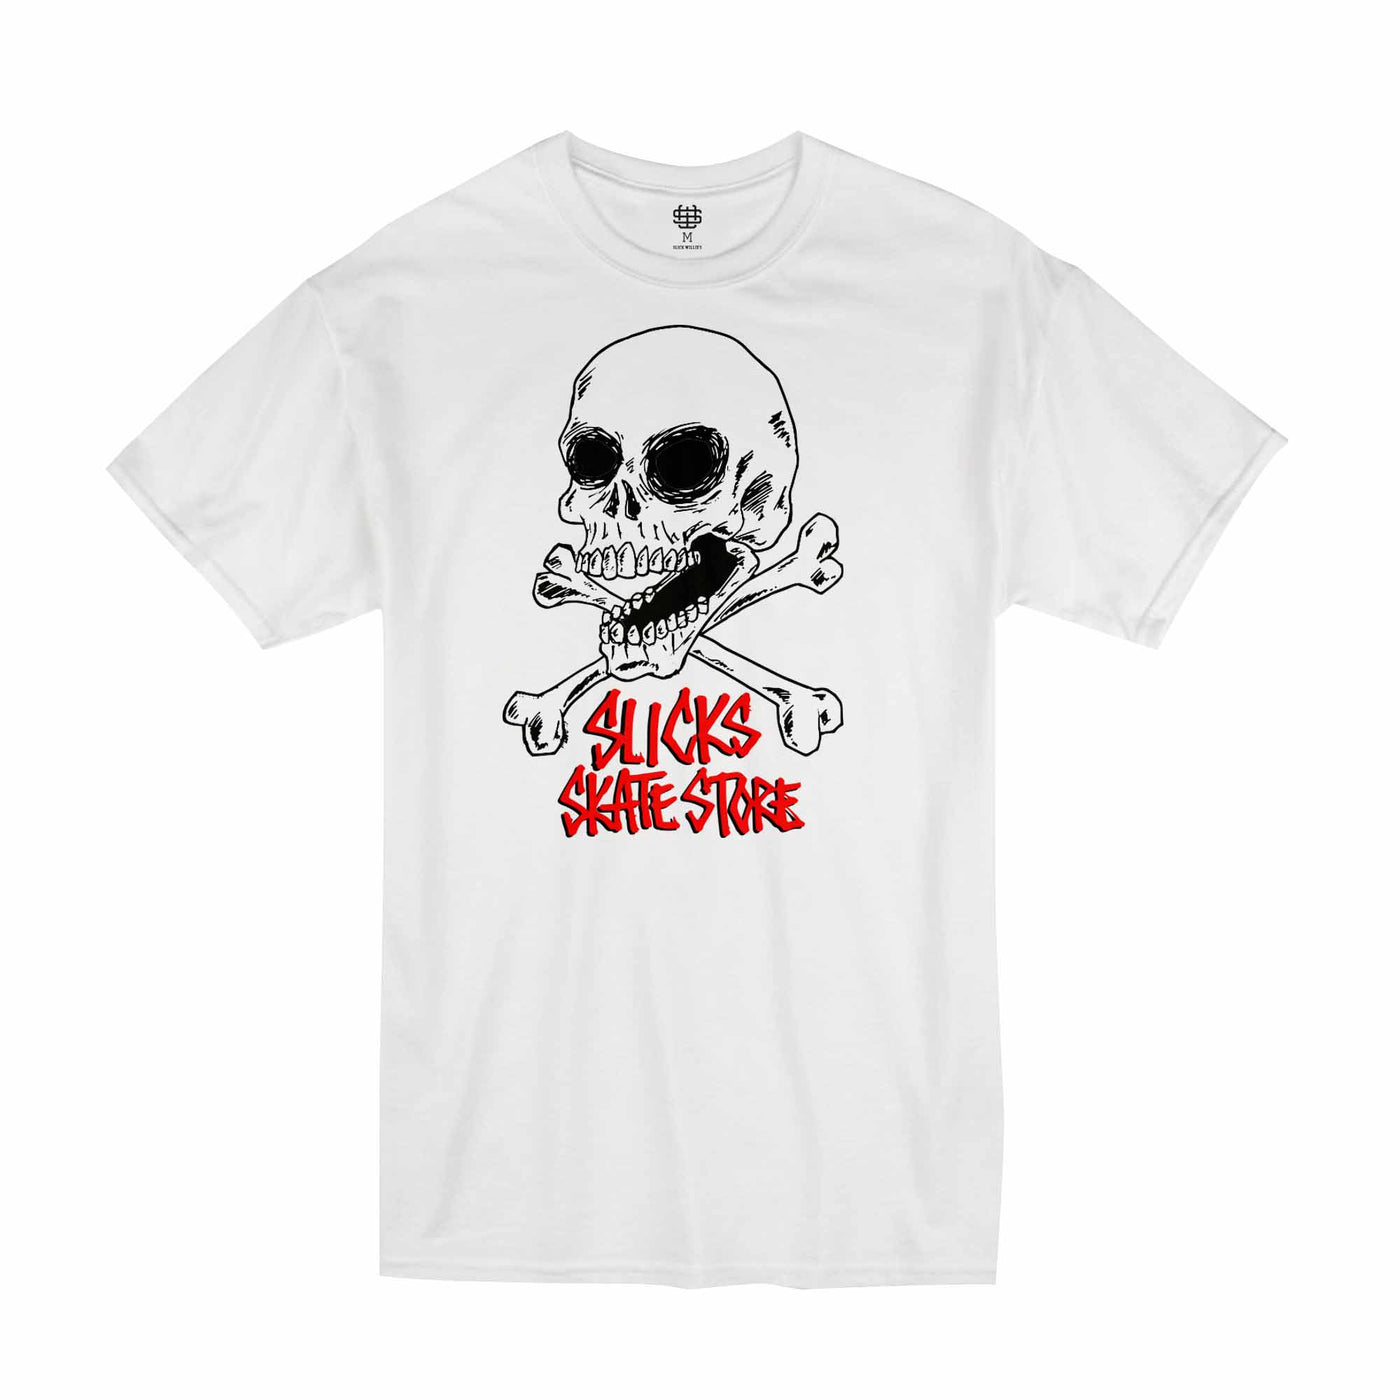 Slick's Skate Store Fos Crossbones Kids T-Shirt - White